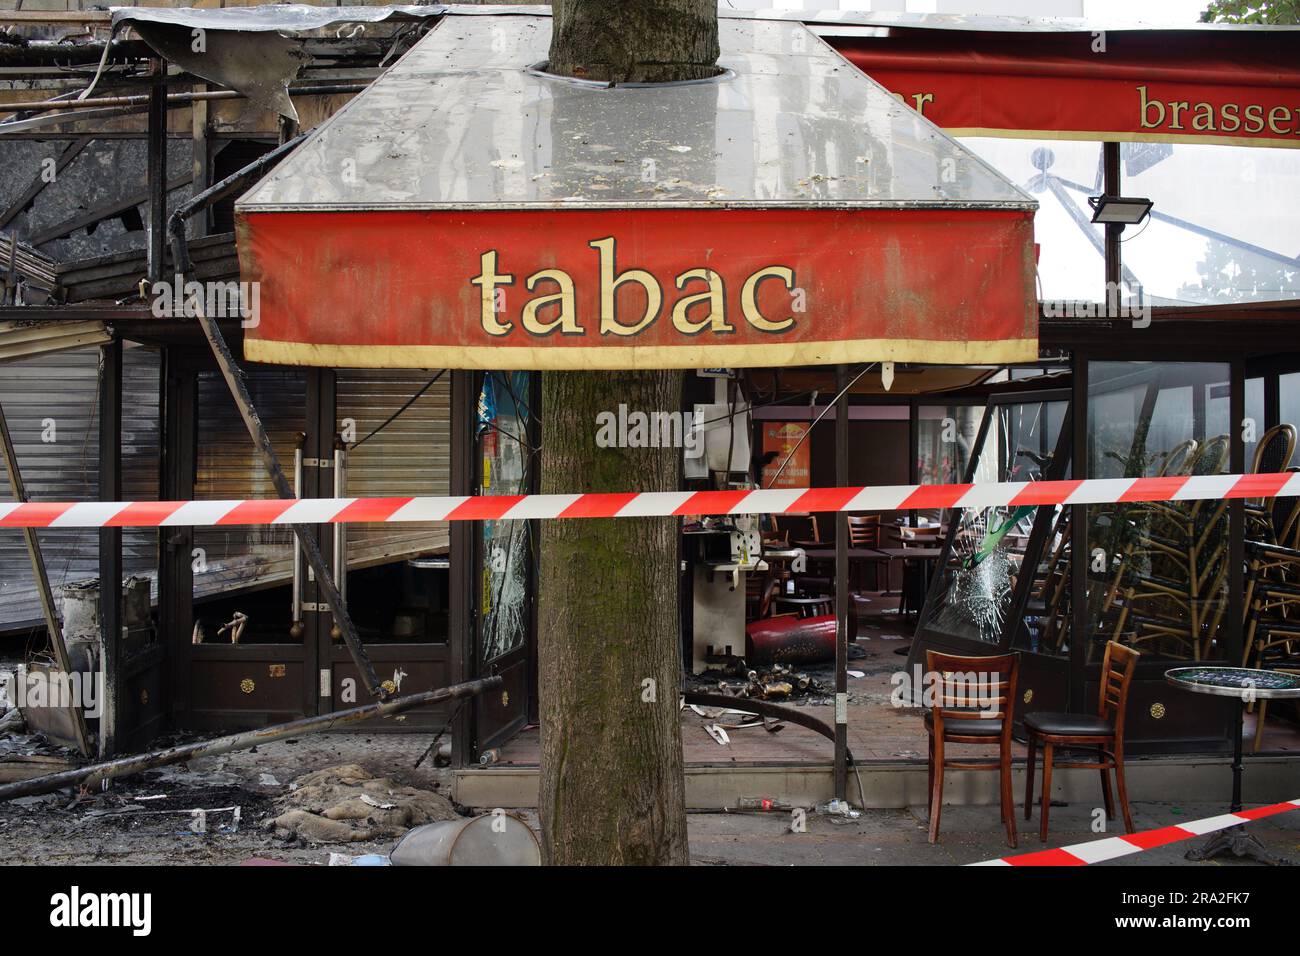 Un café est attaqué après une troisième nuit de violence et d'émeutes à la suite du meurtre d'un adolescent par la police, le Village des fêtes café, rue Louise Thuliez, place de fêtes, 75019, Paris, France - 30 juin 2023 Banque D'Images